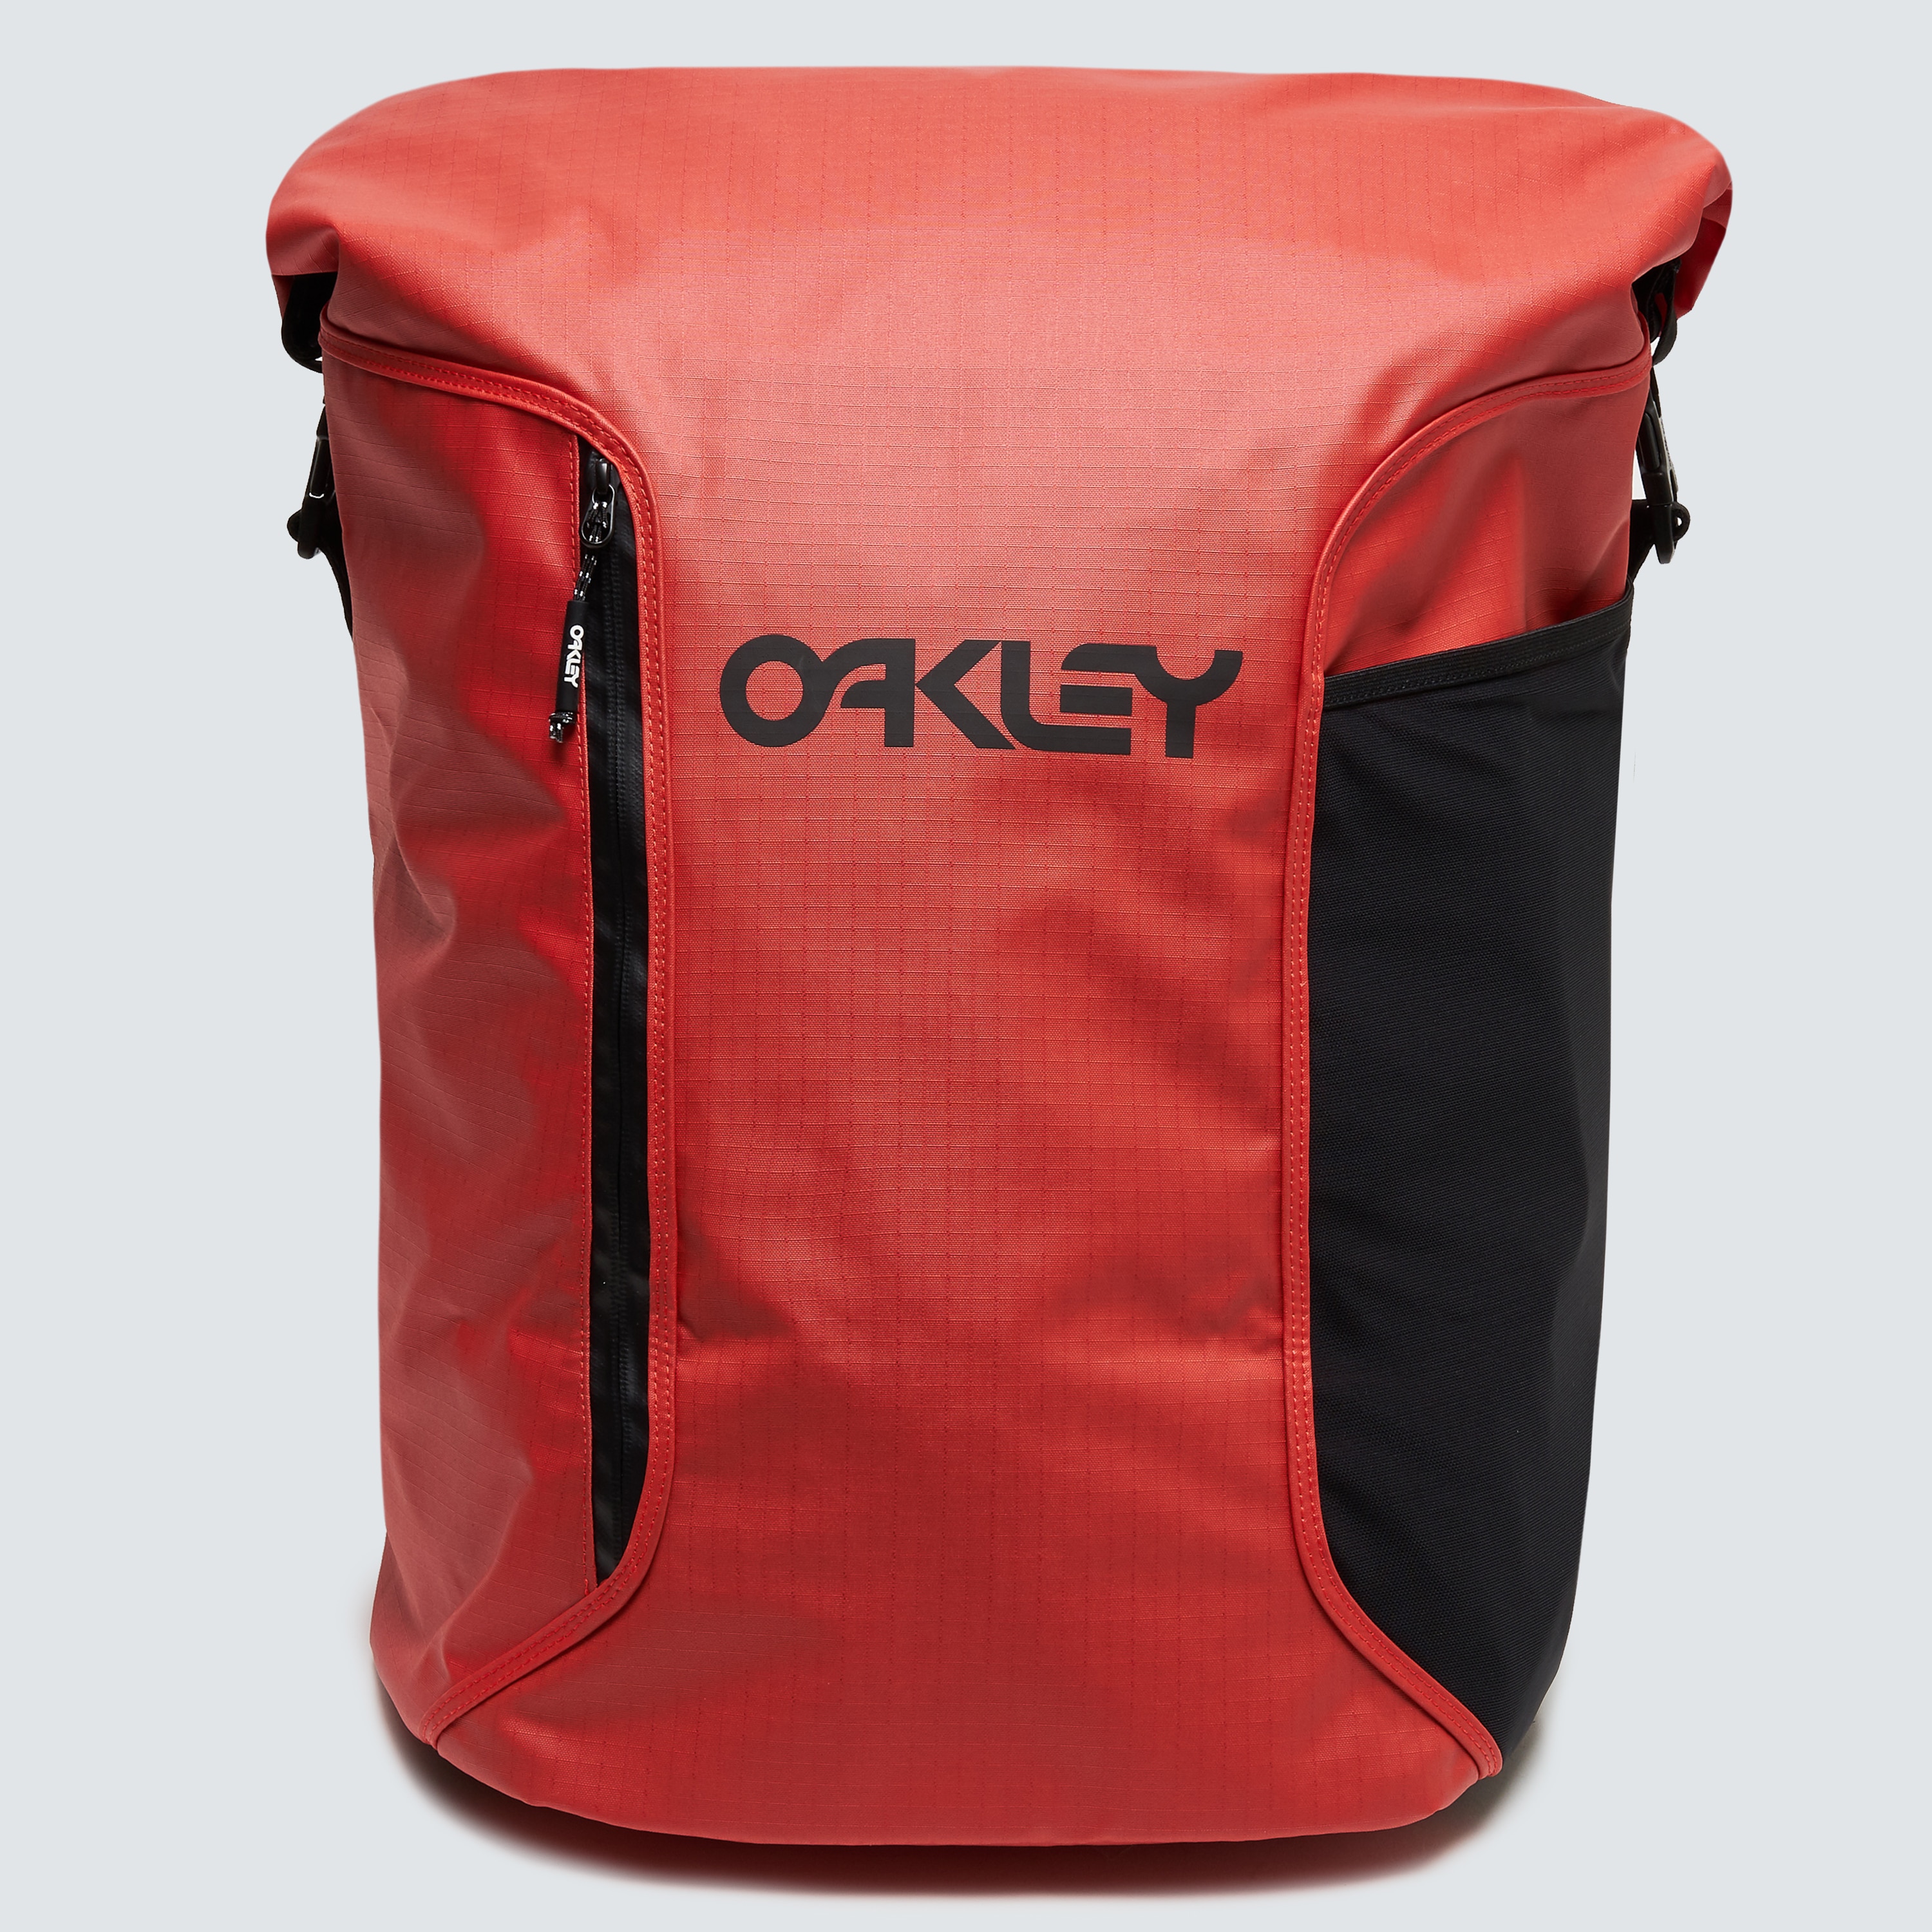 Oakley Wet Dry Surf Bag - Energetic 